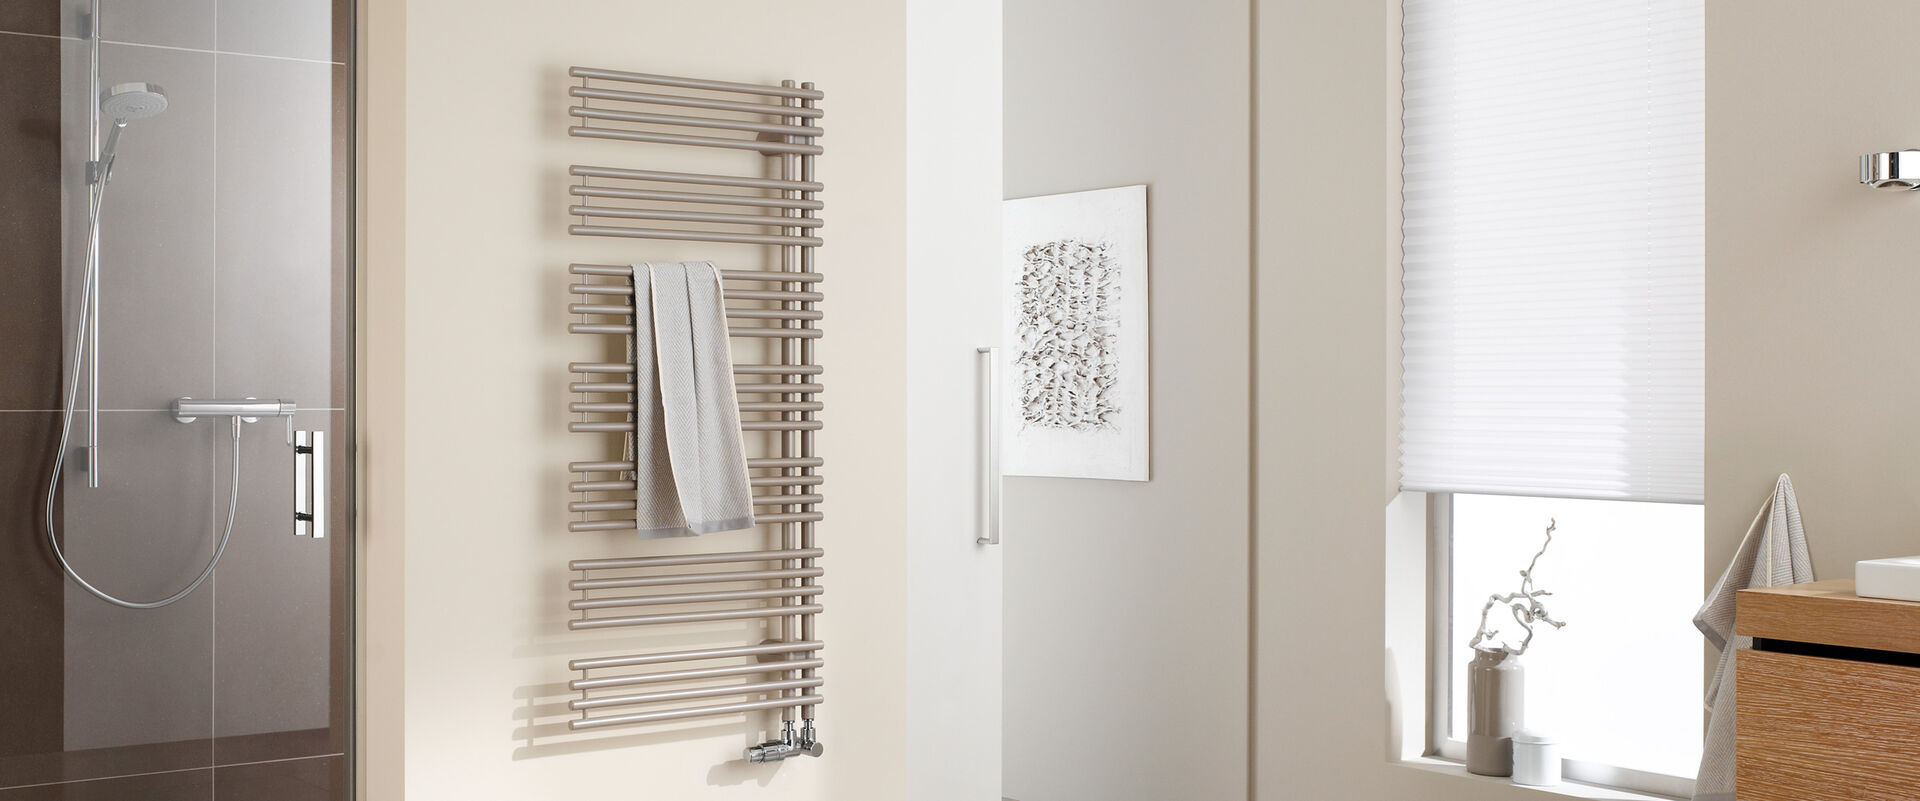 Badambiente mit dusche, Designheizkörper wandmontiert und Waschbecken auf Holzmöbeln